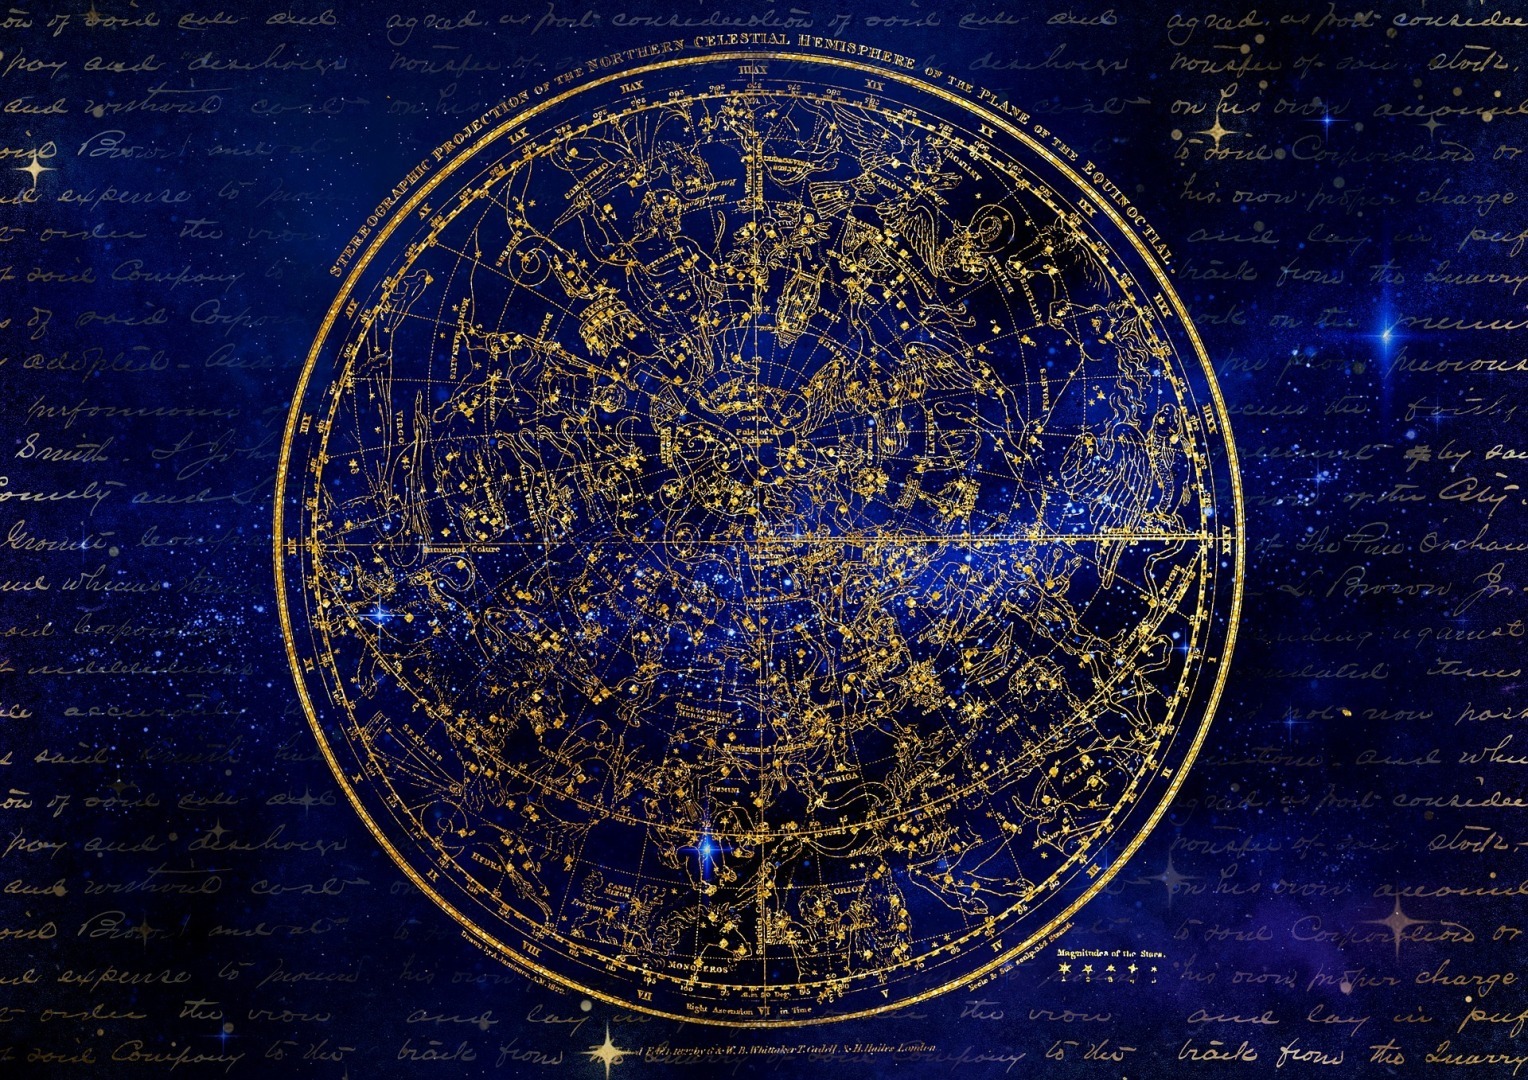 Что такое натальная карта? Астрологические дома что это такое, иххарактеристика. Как влияют на судьбу человека астрологические дома в натальнойкарте